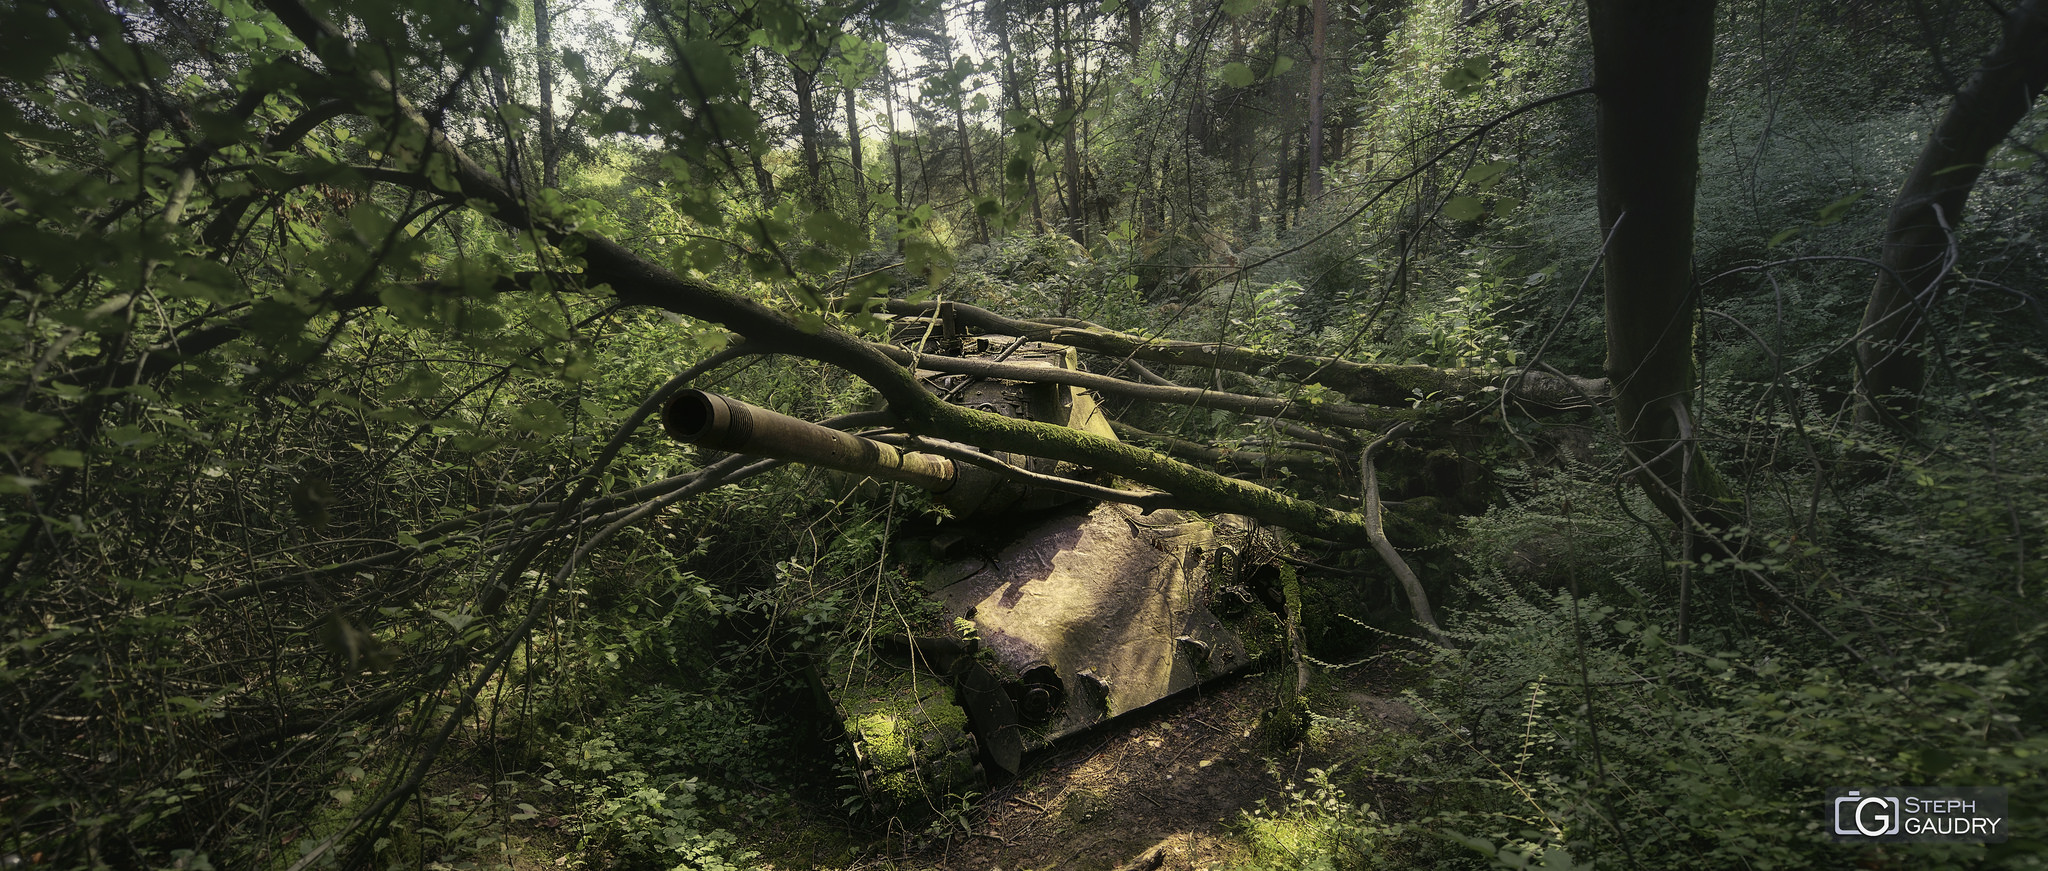 Tank abandonné dans la forêt [Click to start slideshow]